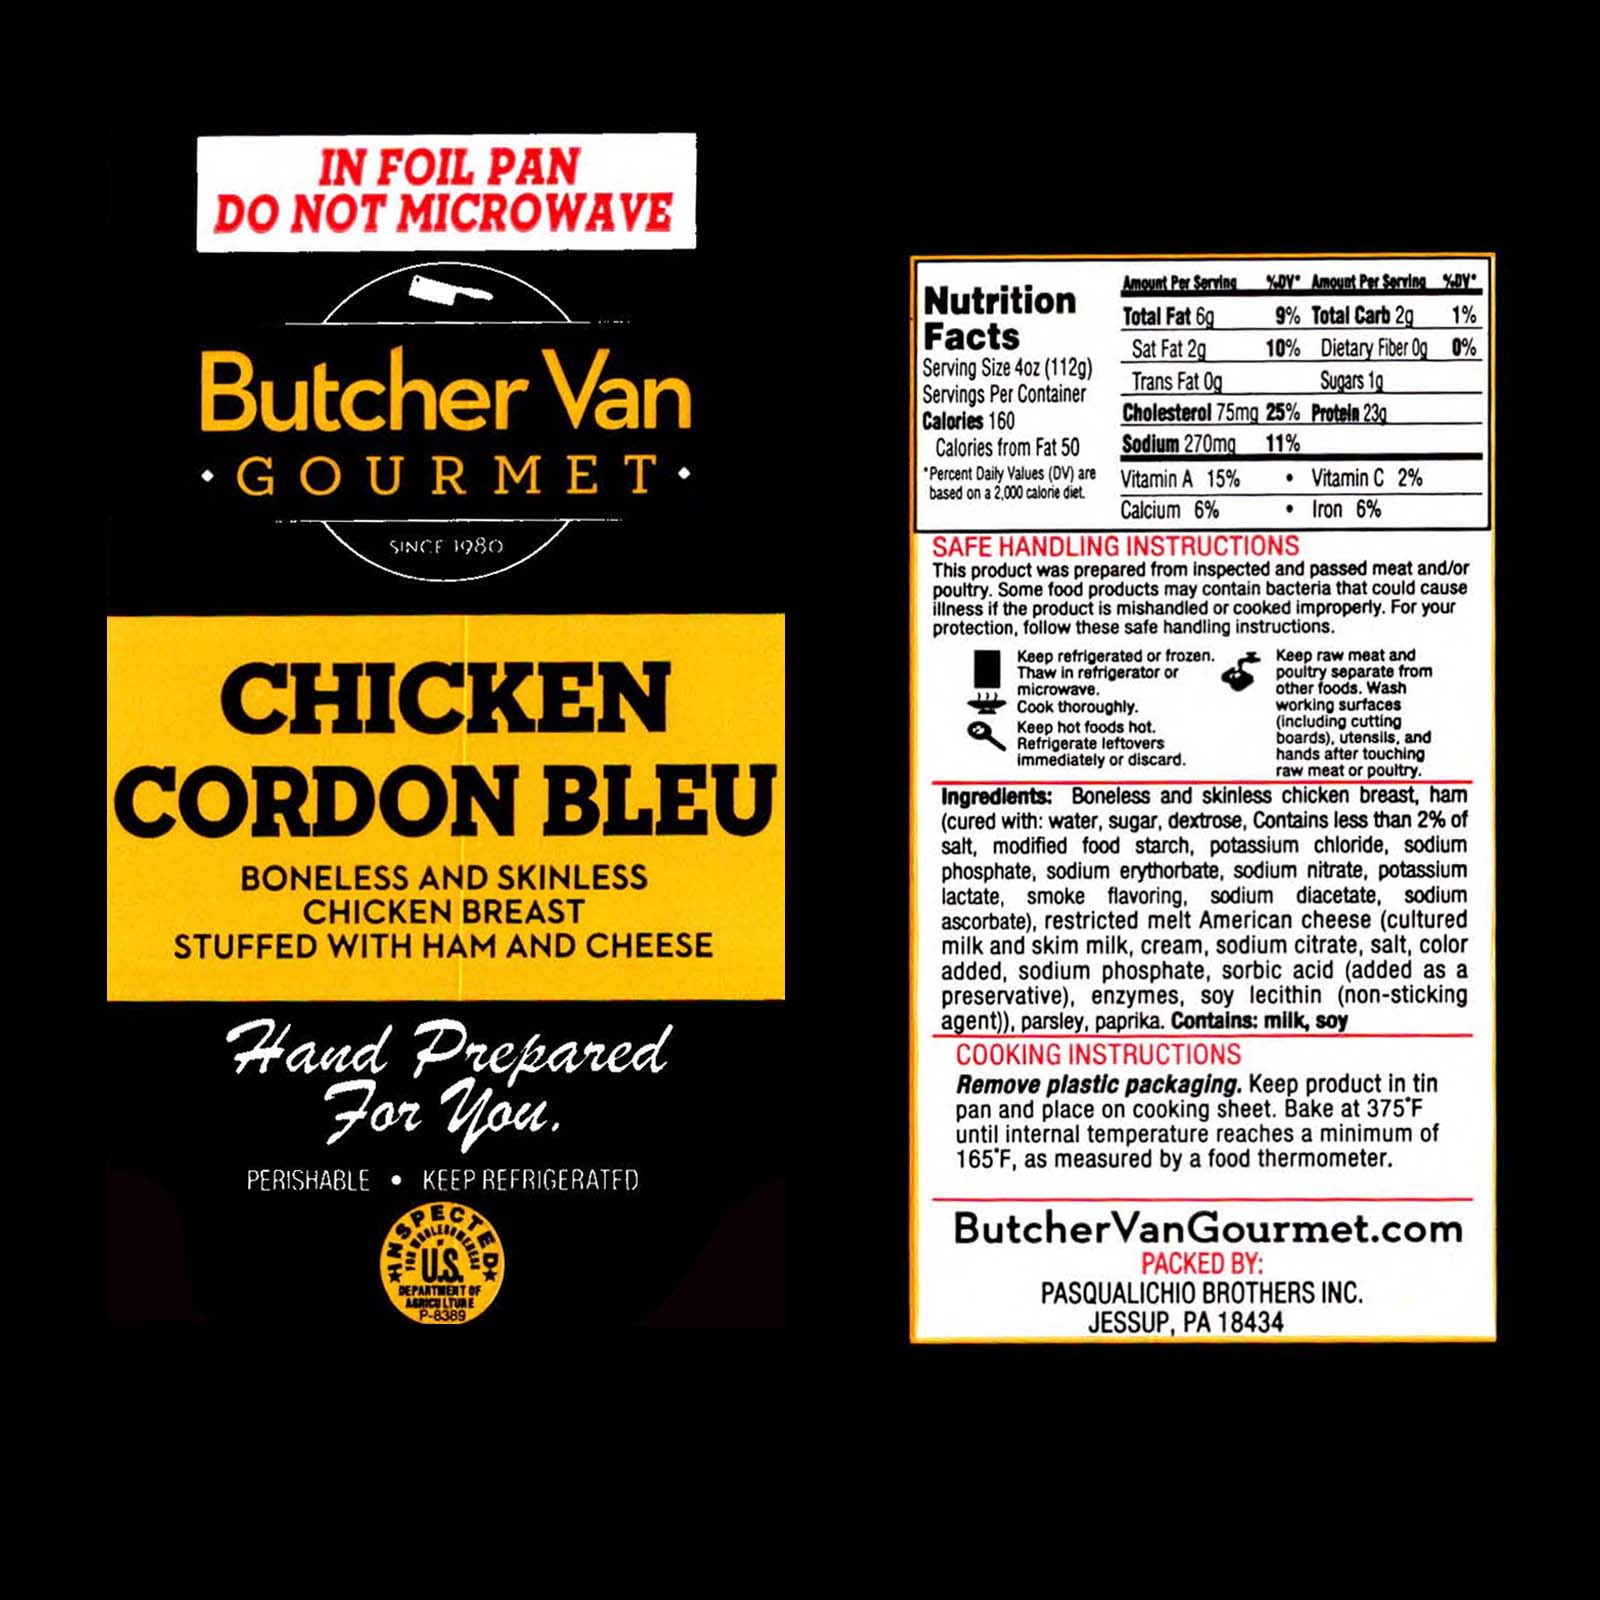 Chicken Cordon Bleu